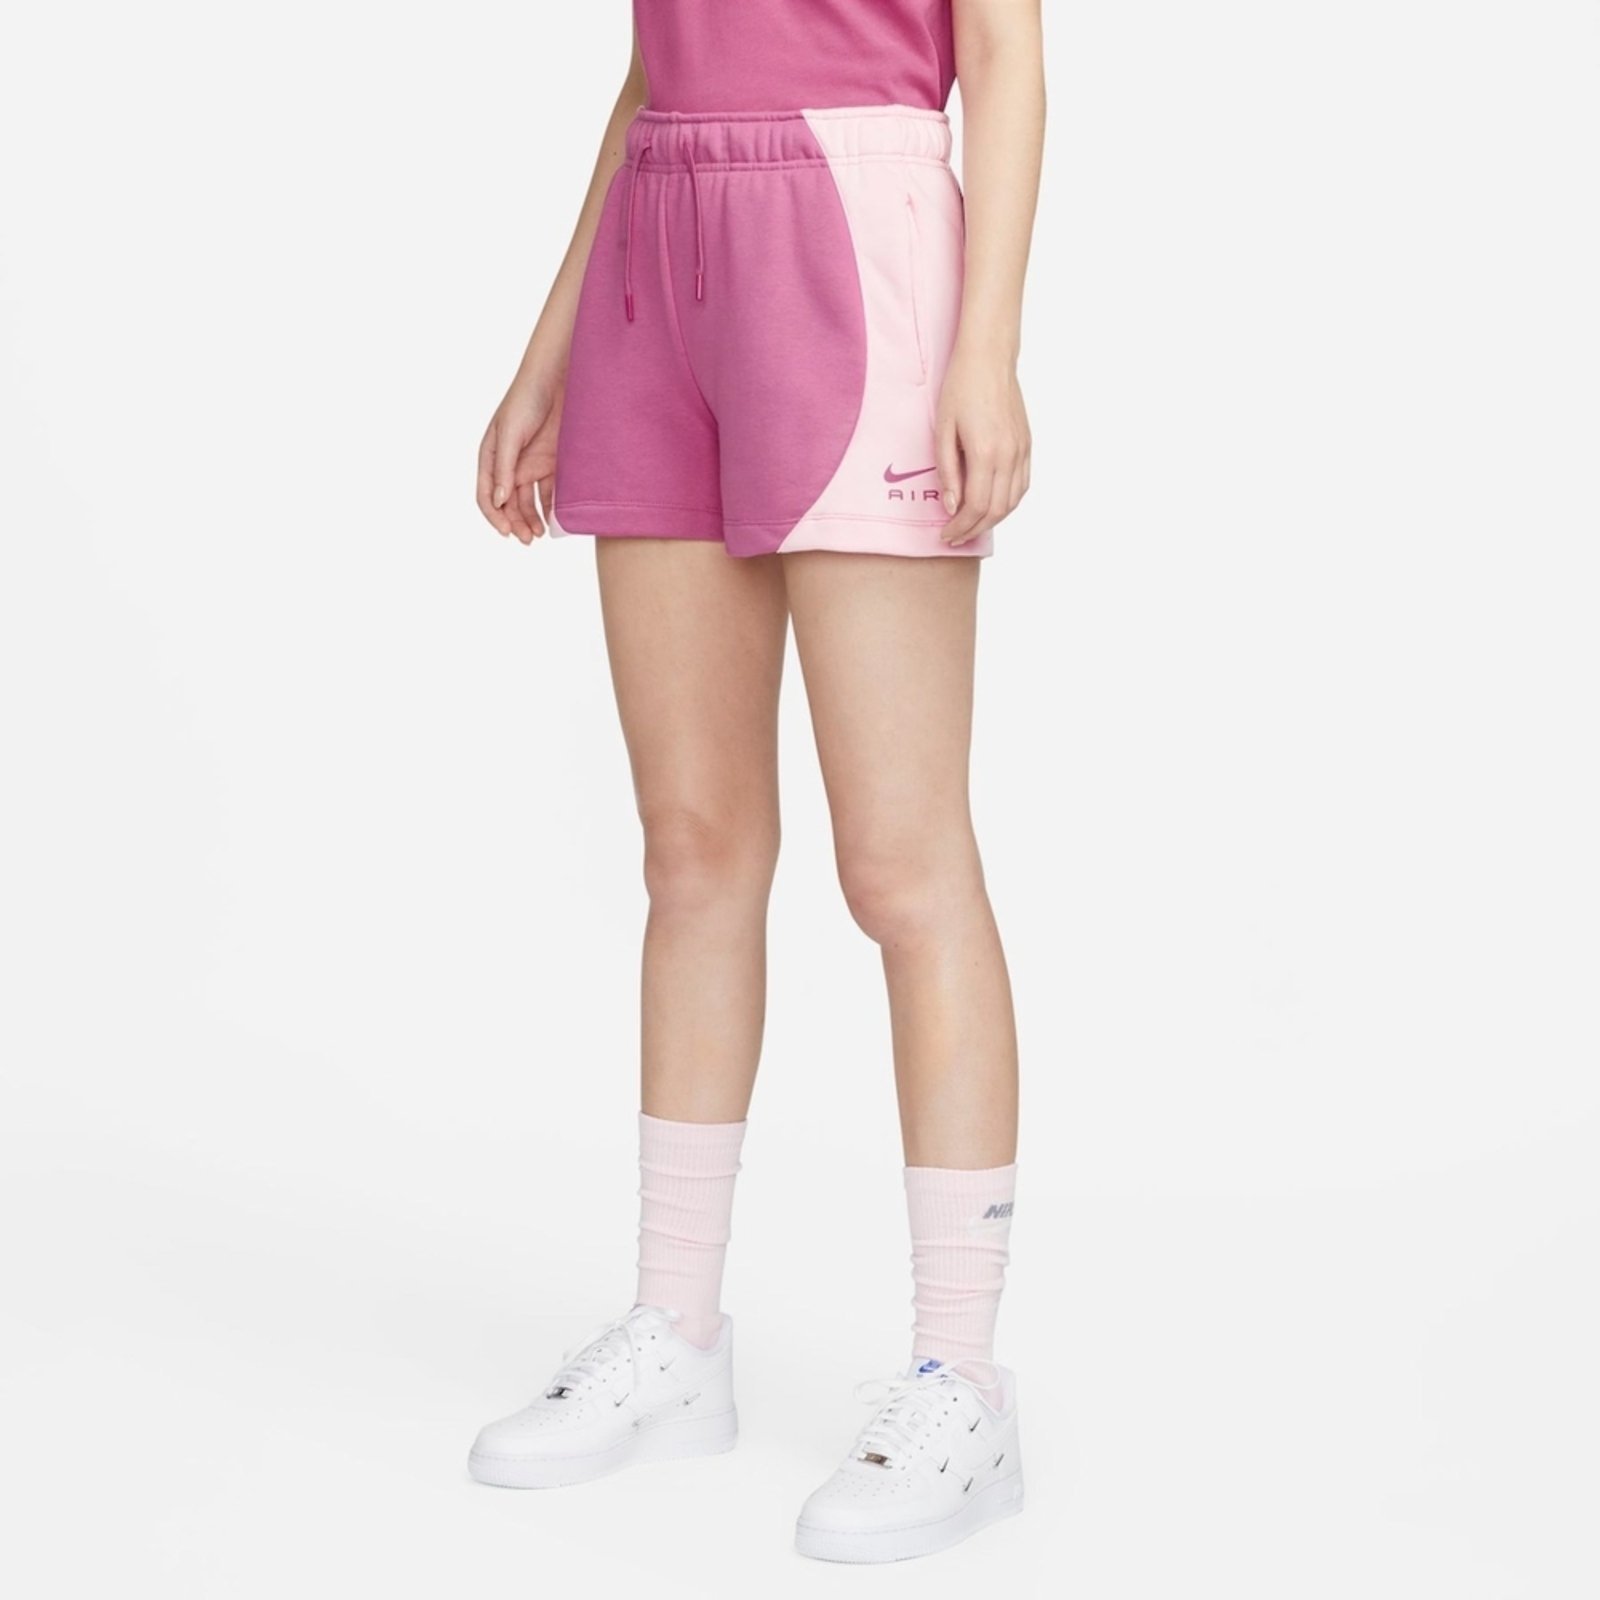 Shorts Nike Air Fleece Feminino - Compre Agora